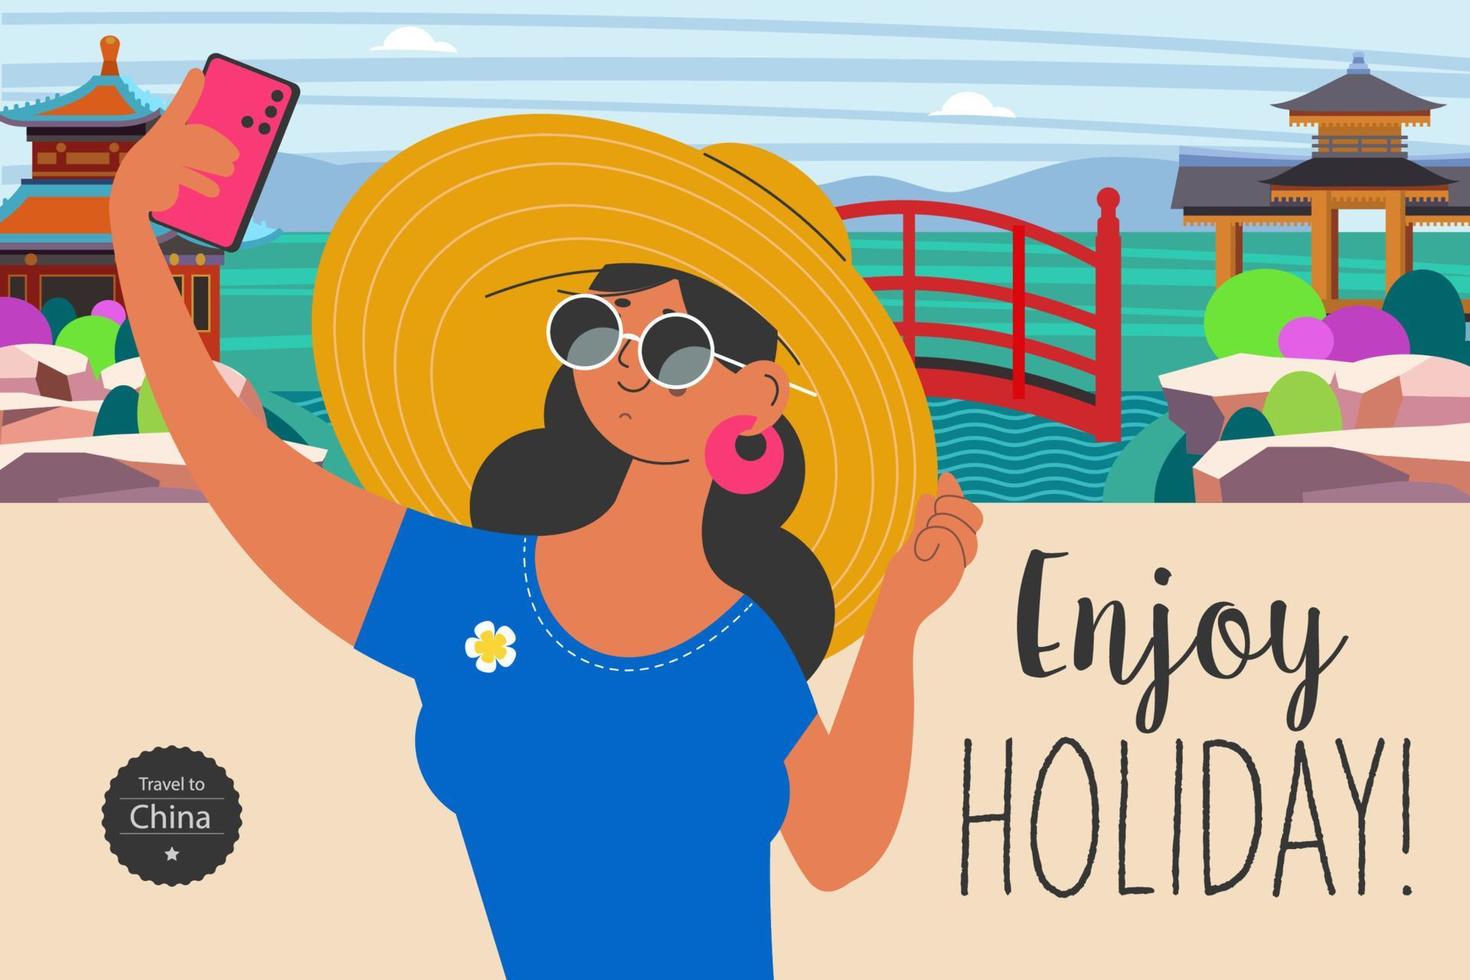 reis op vakantie en maak selfies op de achtergrond van de bezienswaardigheden. vakantie genieten. vectorillustratie. vector